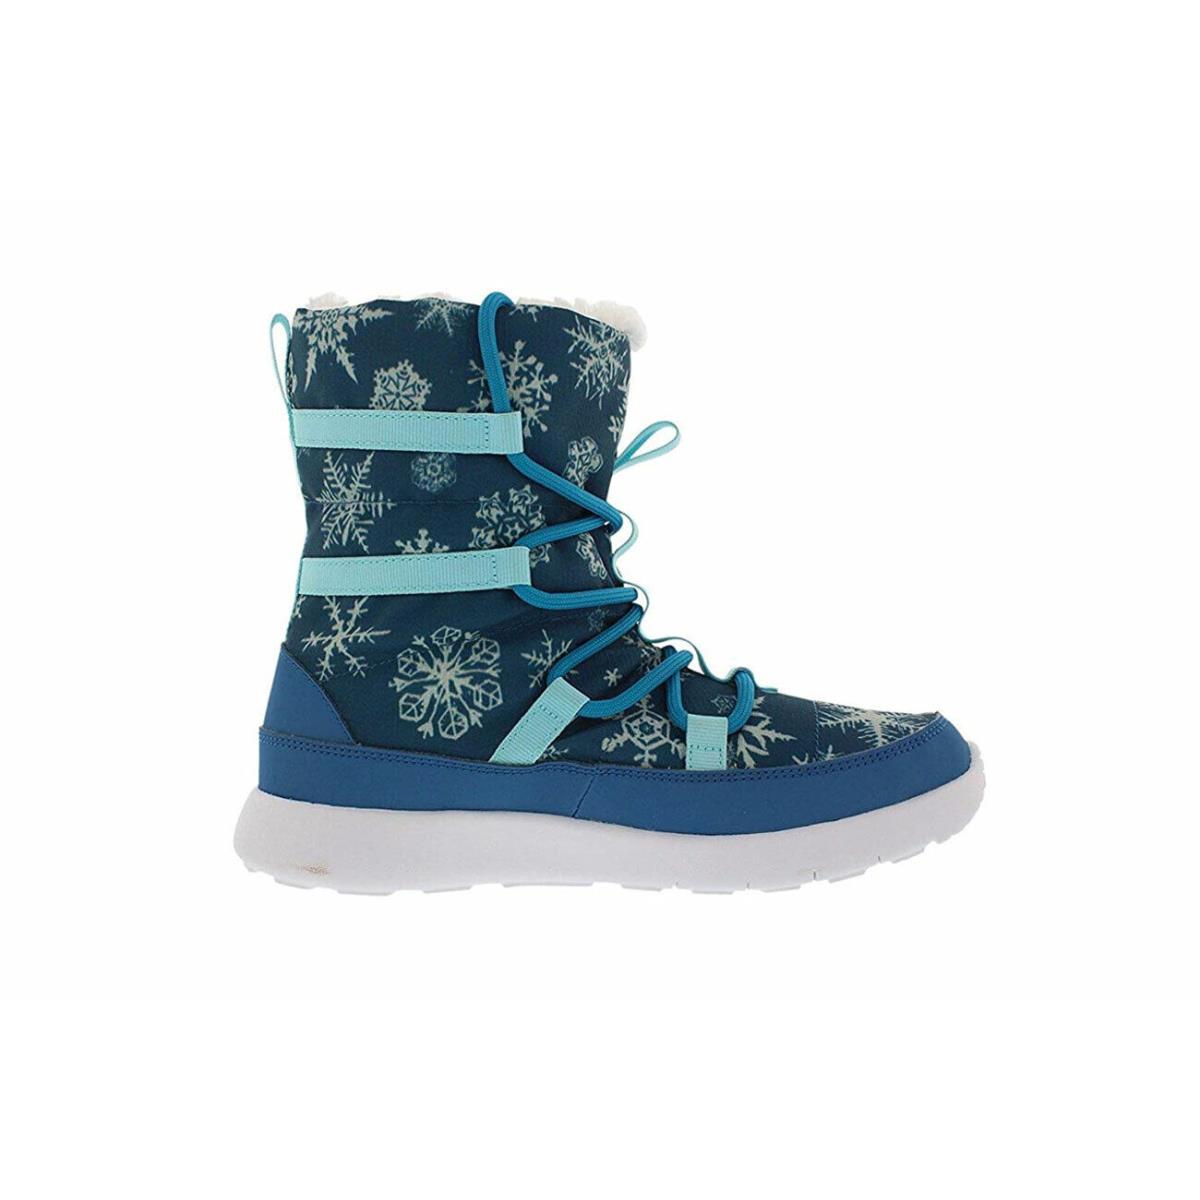 Nike Roshe One Hi Print Psv 807745 400 Little Kid`s Blue Winter Boots